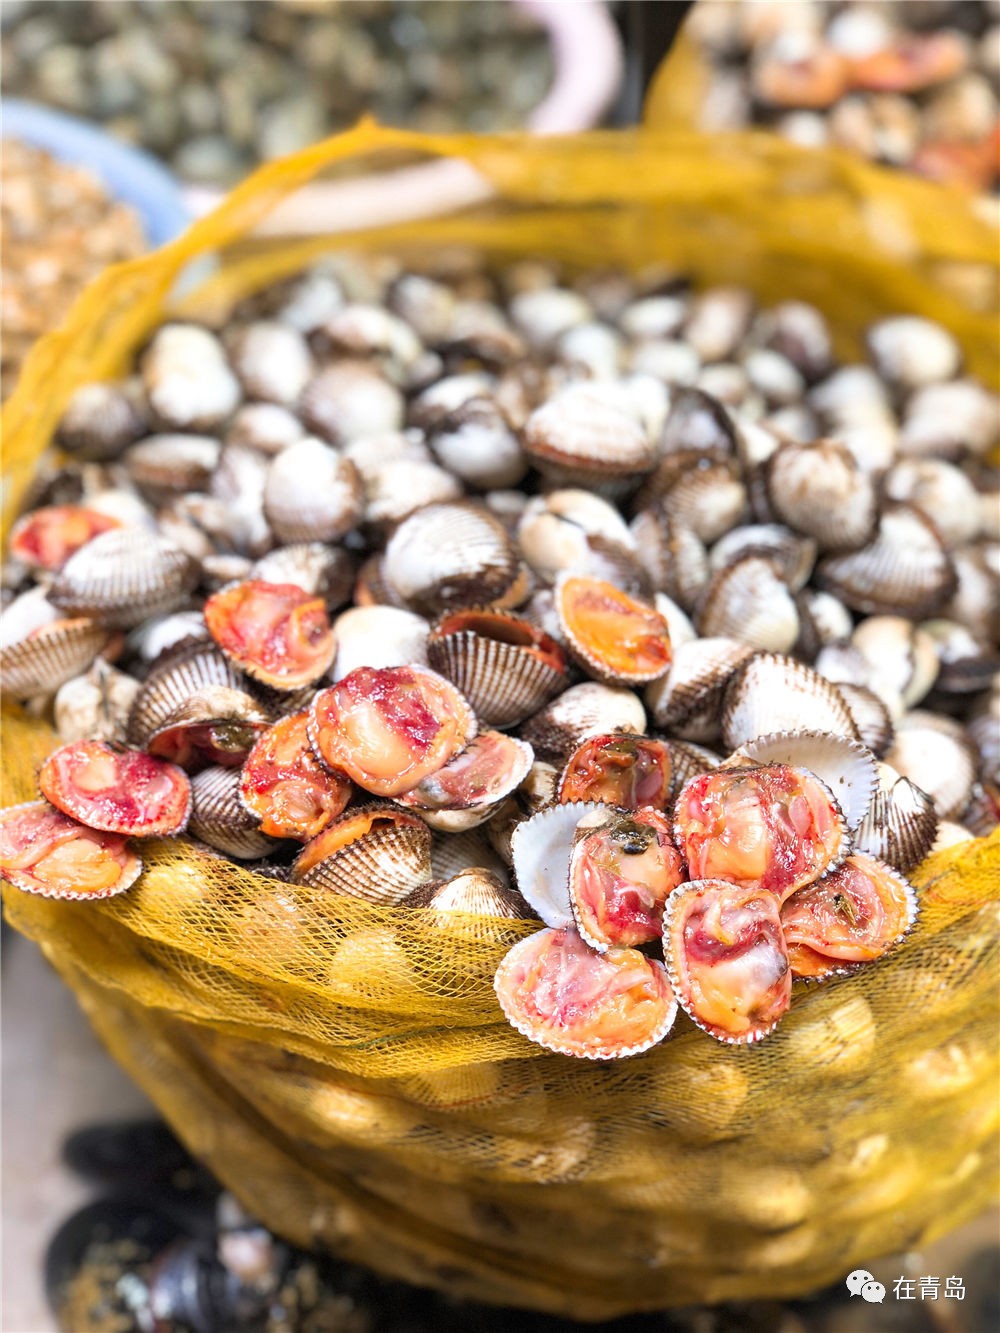 小海胆▲海葵▲花盖螃蟹埠西市场部分海鲜价格黄花鱼 25元/斤海蛎子